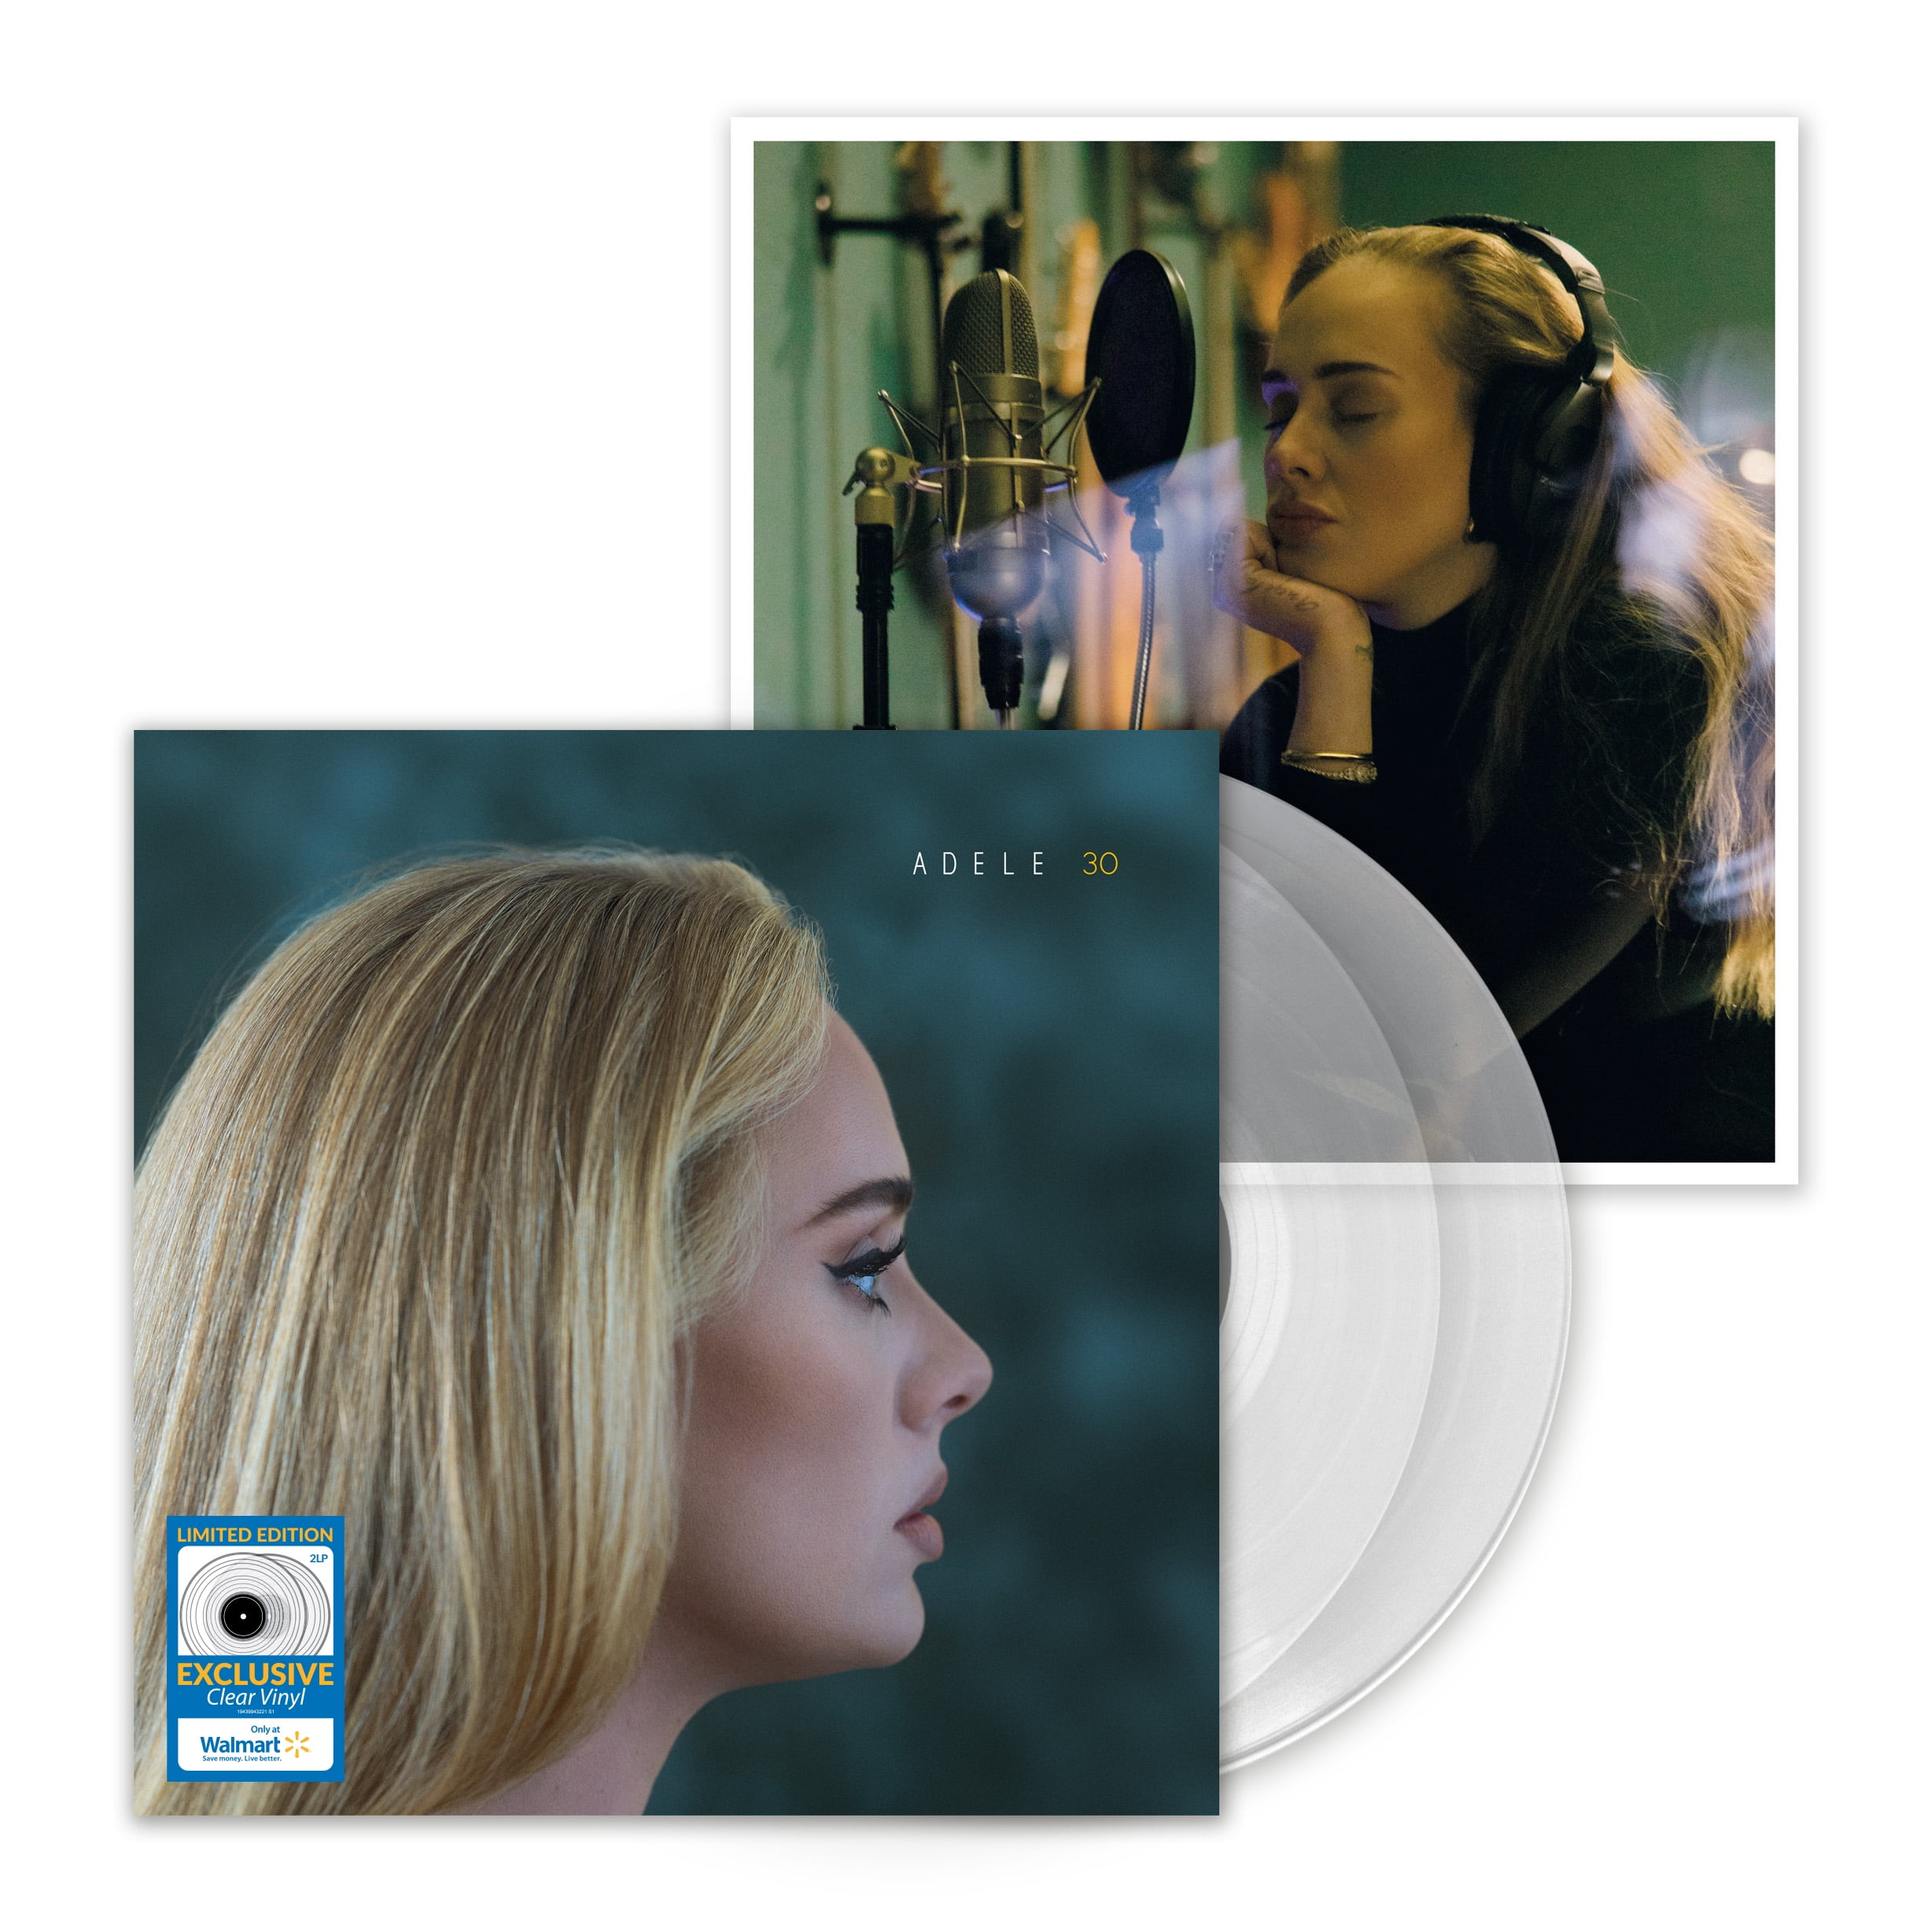 Buy Adele - 21 - Vinilo Online Paraguay